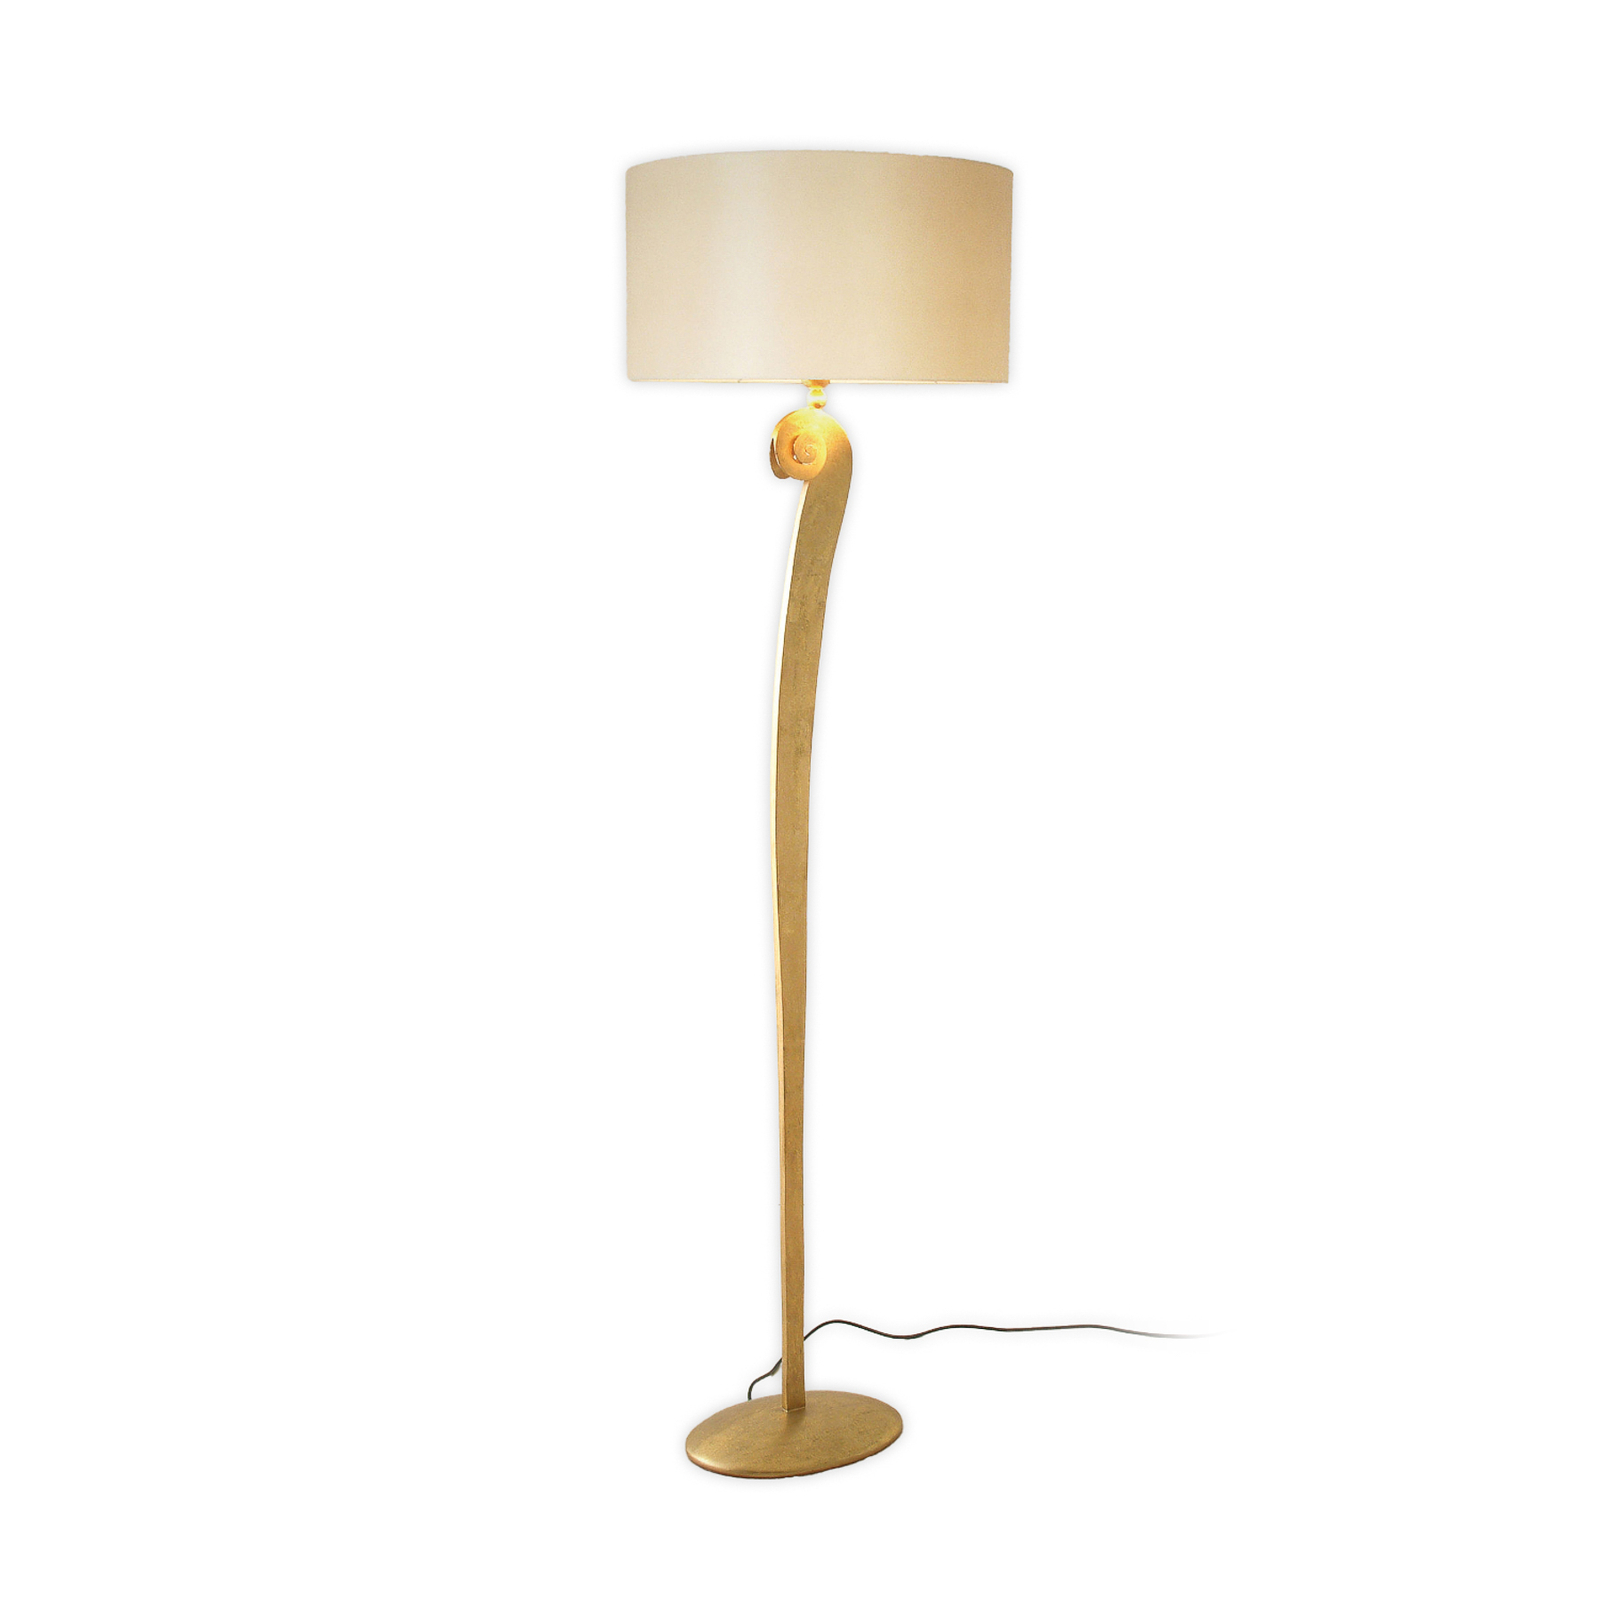 Lino podna lampa, zlatna/ecru, visina 160 cm, željezo